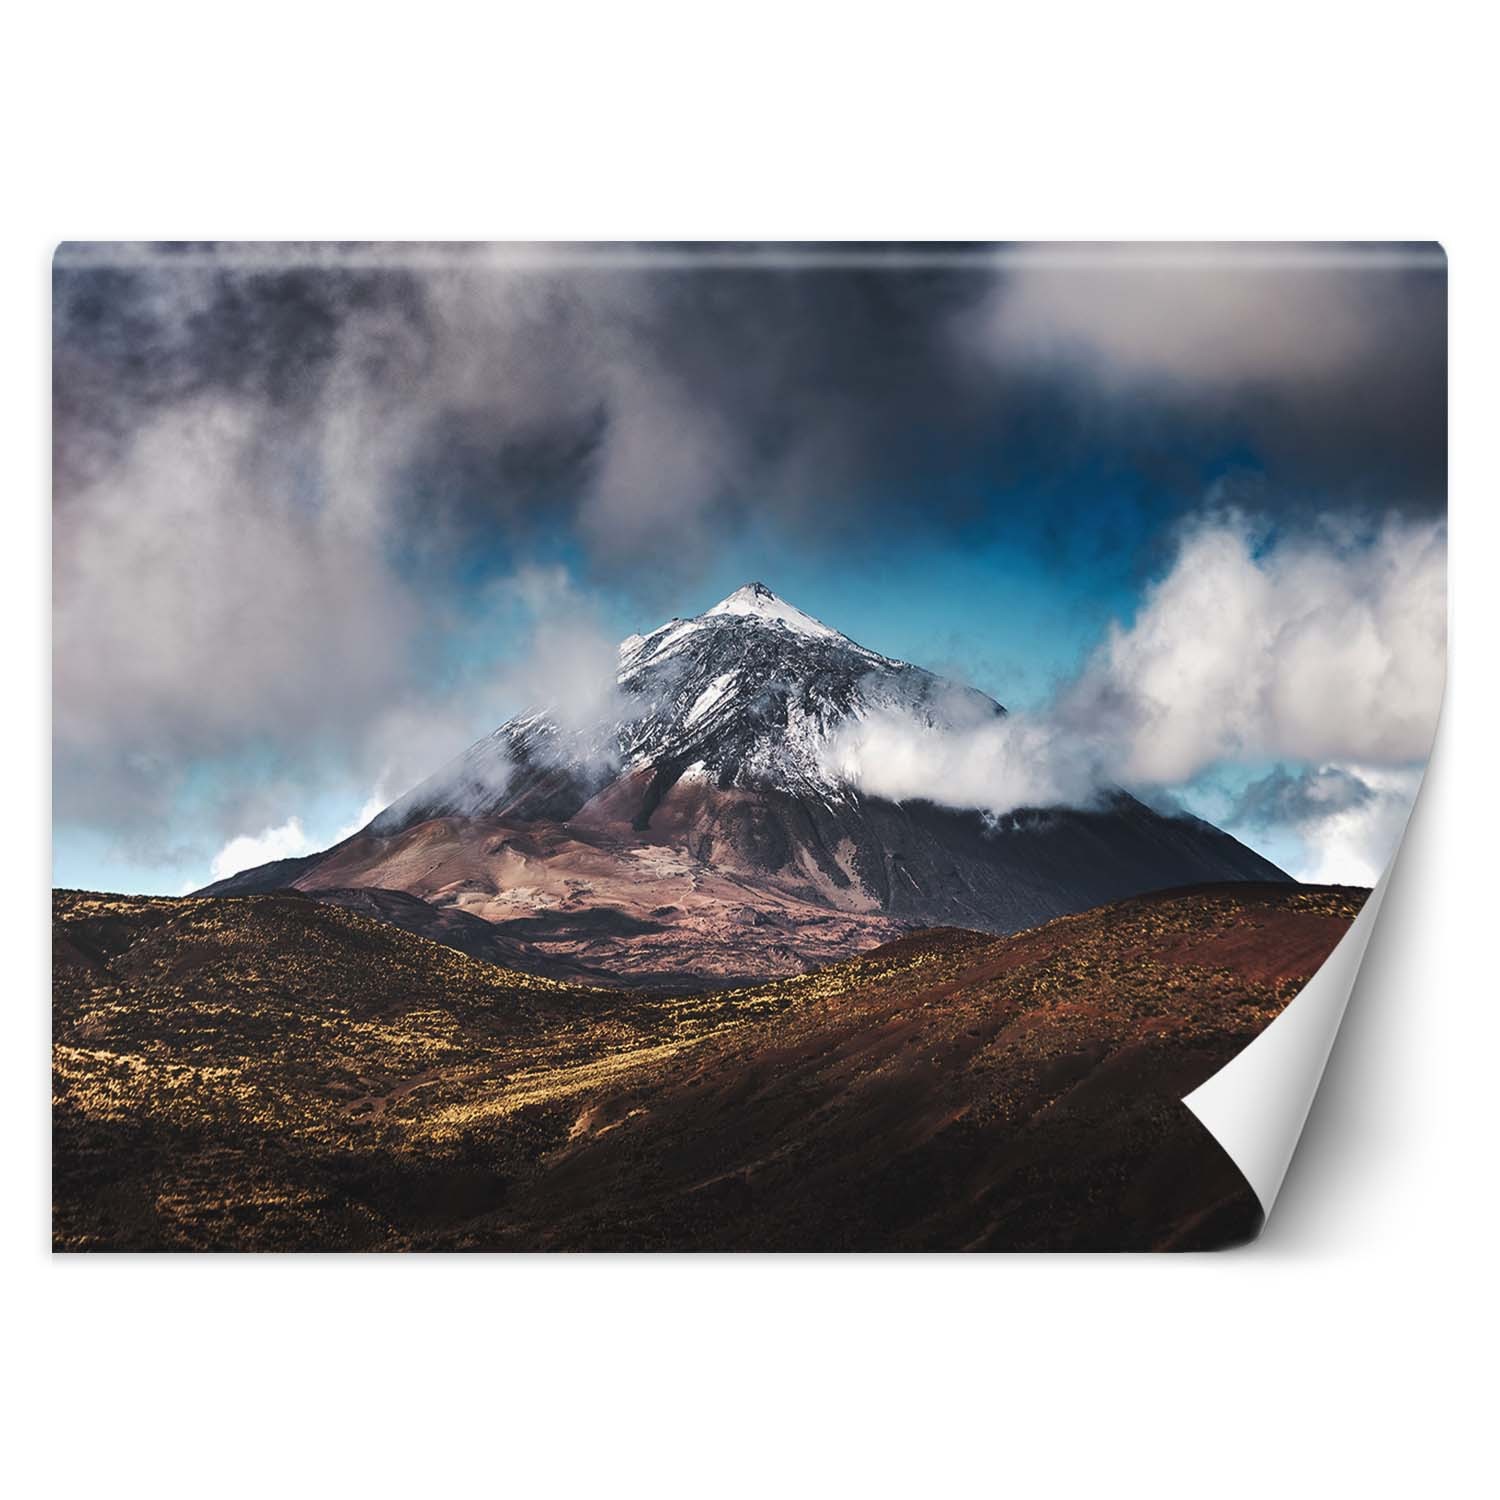 Trend24 – Behang – Bergtop In De Wolken – Vliesbehang – Fotobehang Natuur – Behang Woonkamer – 450x315x2 cm – Incl. behanglijm